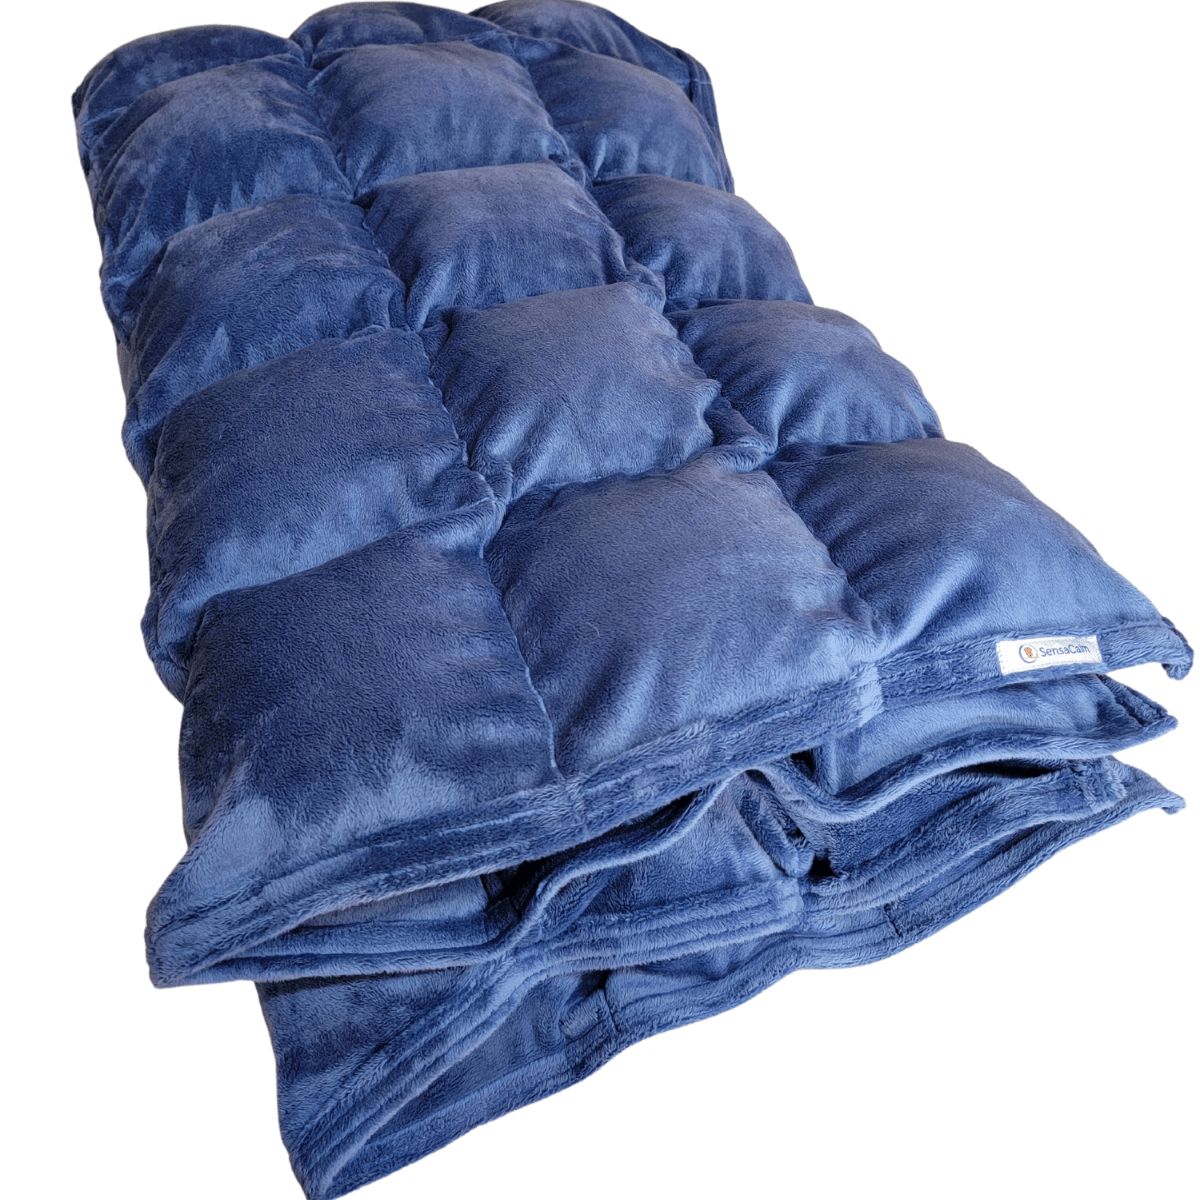 SensaCalm Cuddle Weighted Blanket - Denim Blue Custom Weighted Blanket